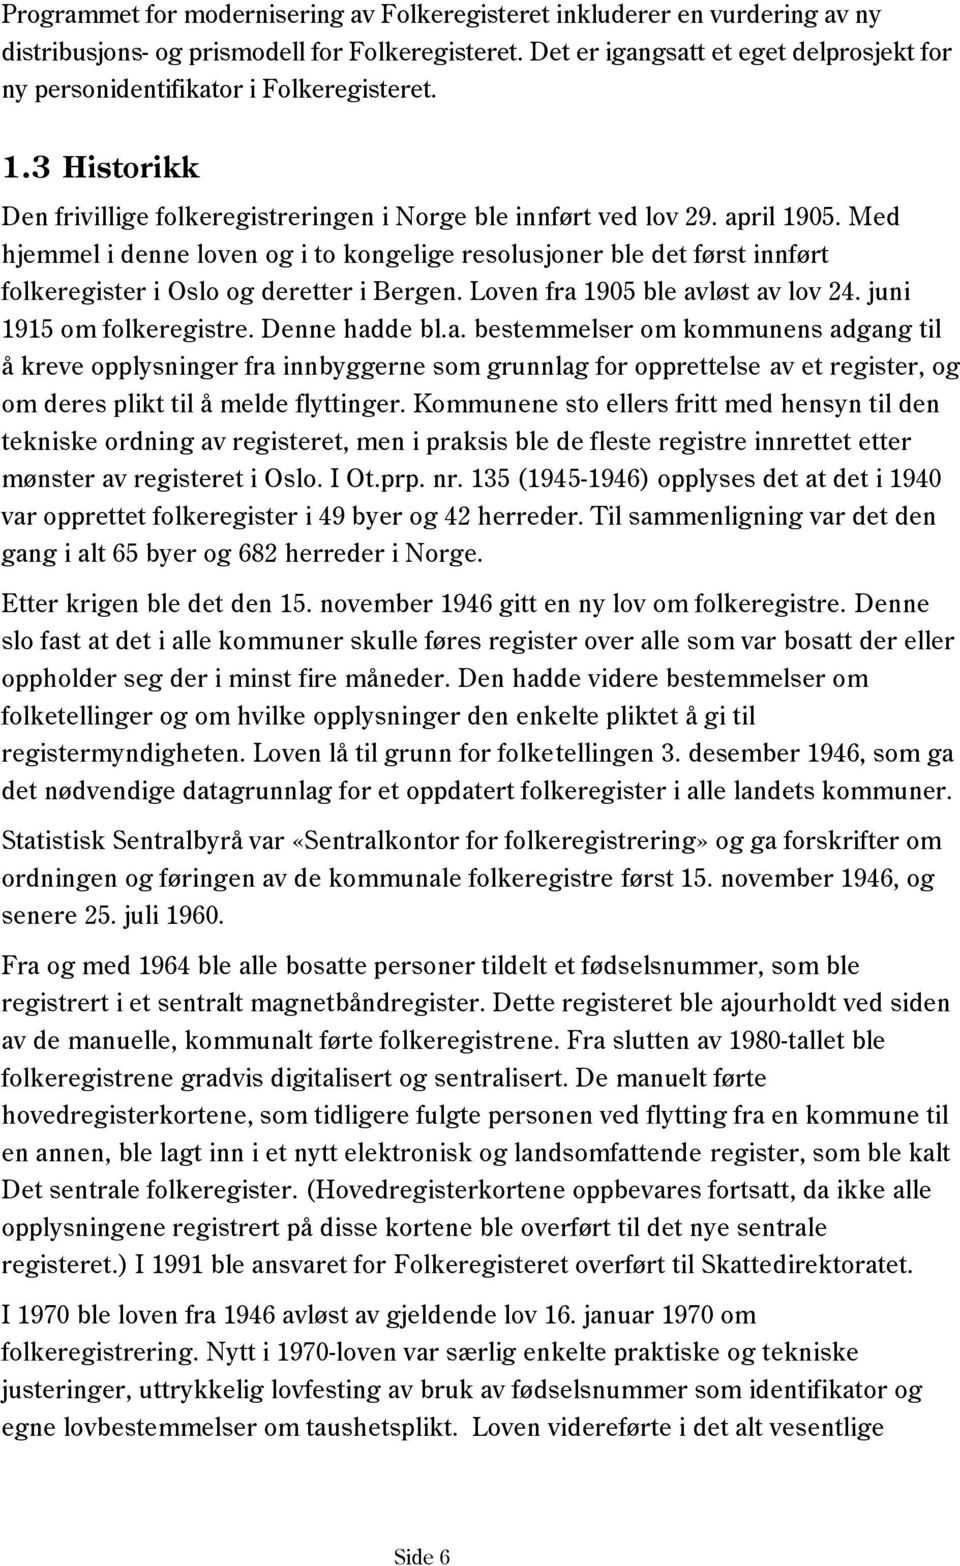 Med hjemmel i denne loven og i to kongelige resolusjoner ble det først innført folkeregister i Oslo og deretter i Bergen. Loven fra 1905 ble avløst av lov 24. juni 1915 om folkeregistre.